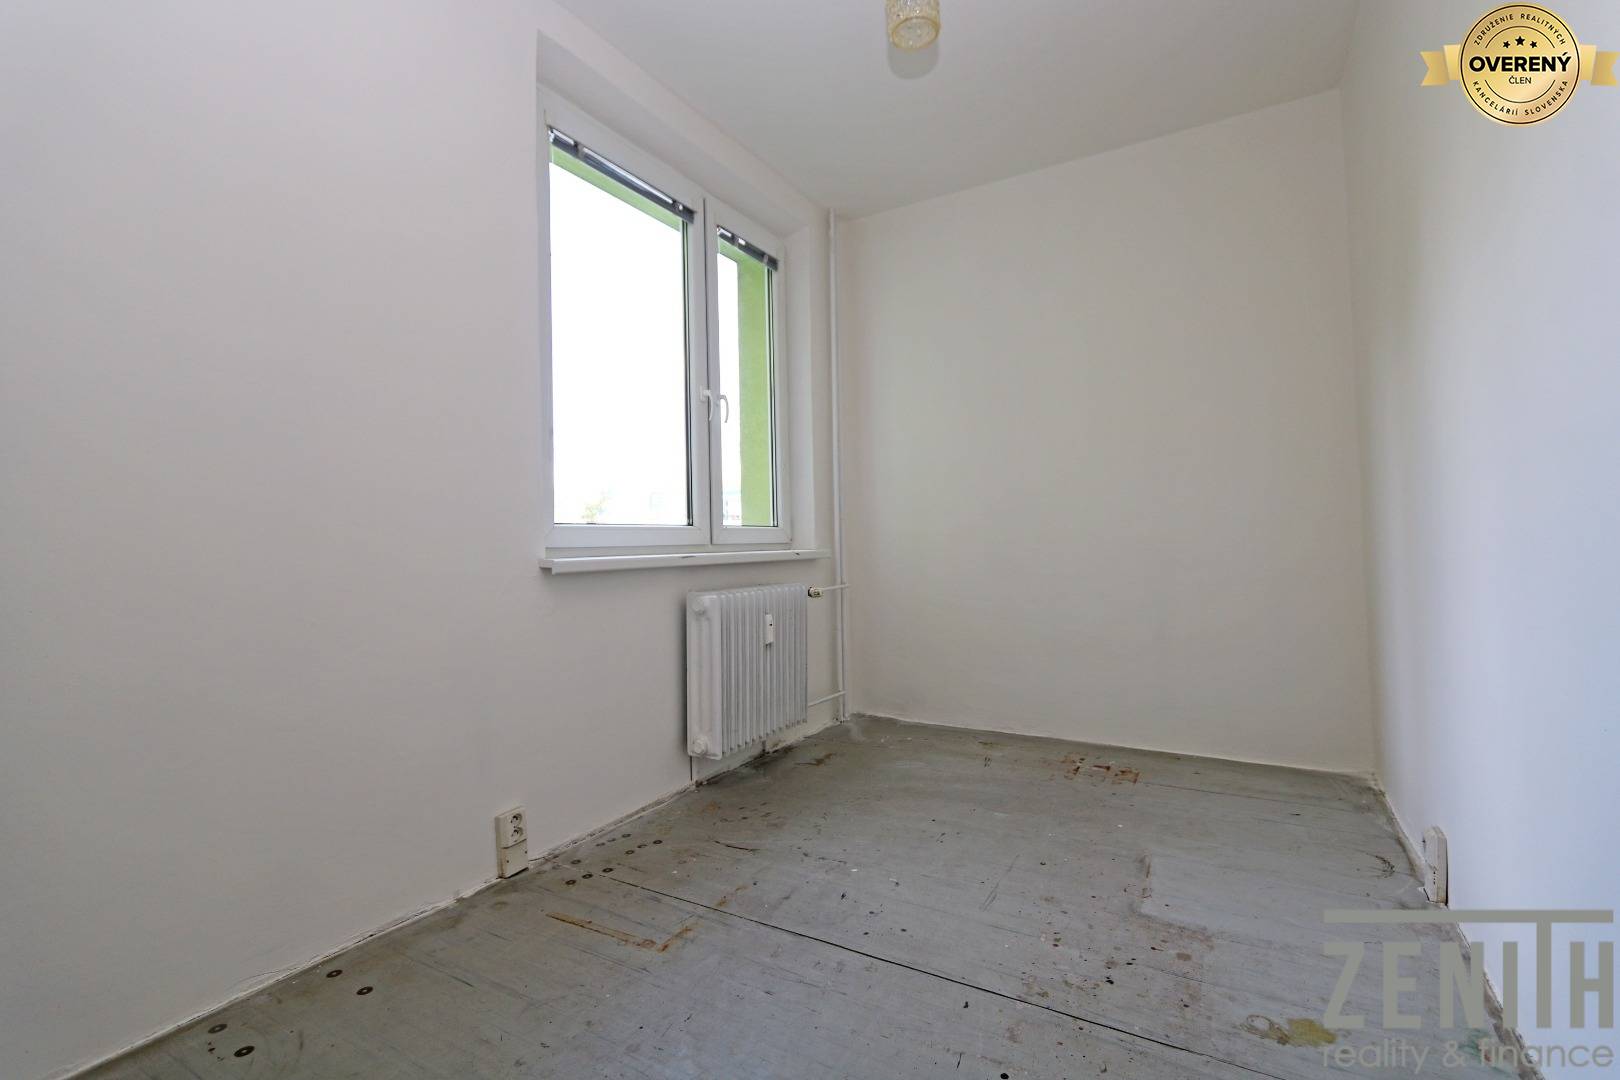 Sale Three bedroom apartment, Viestova, Myjava, Slovakia